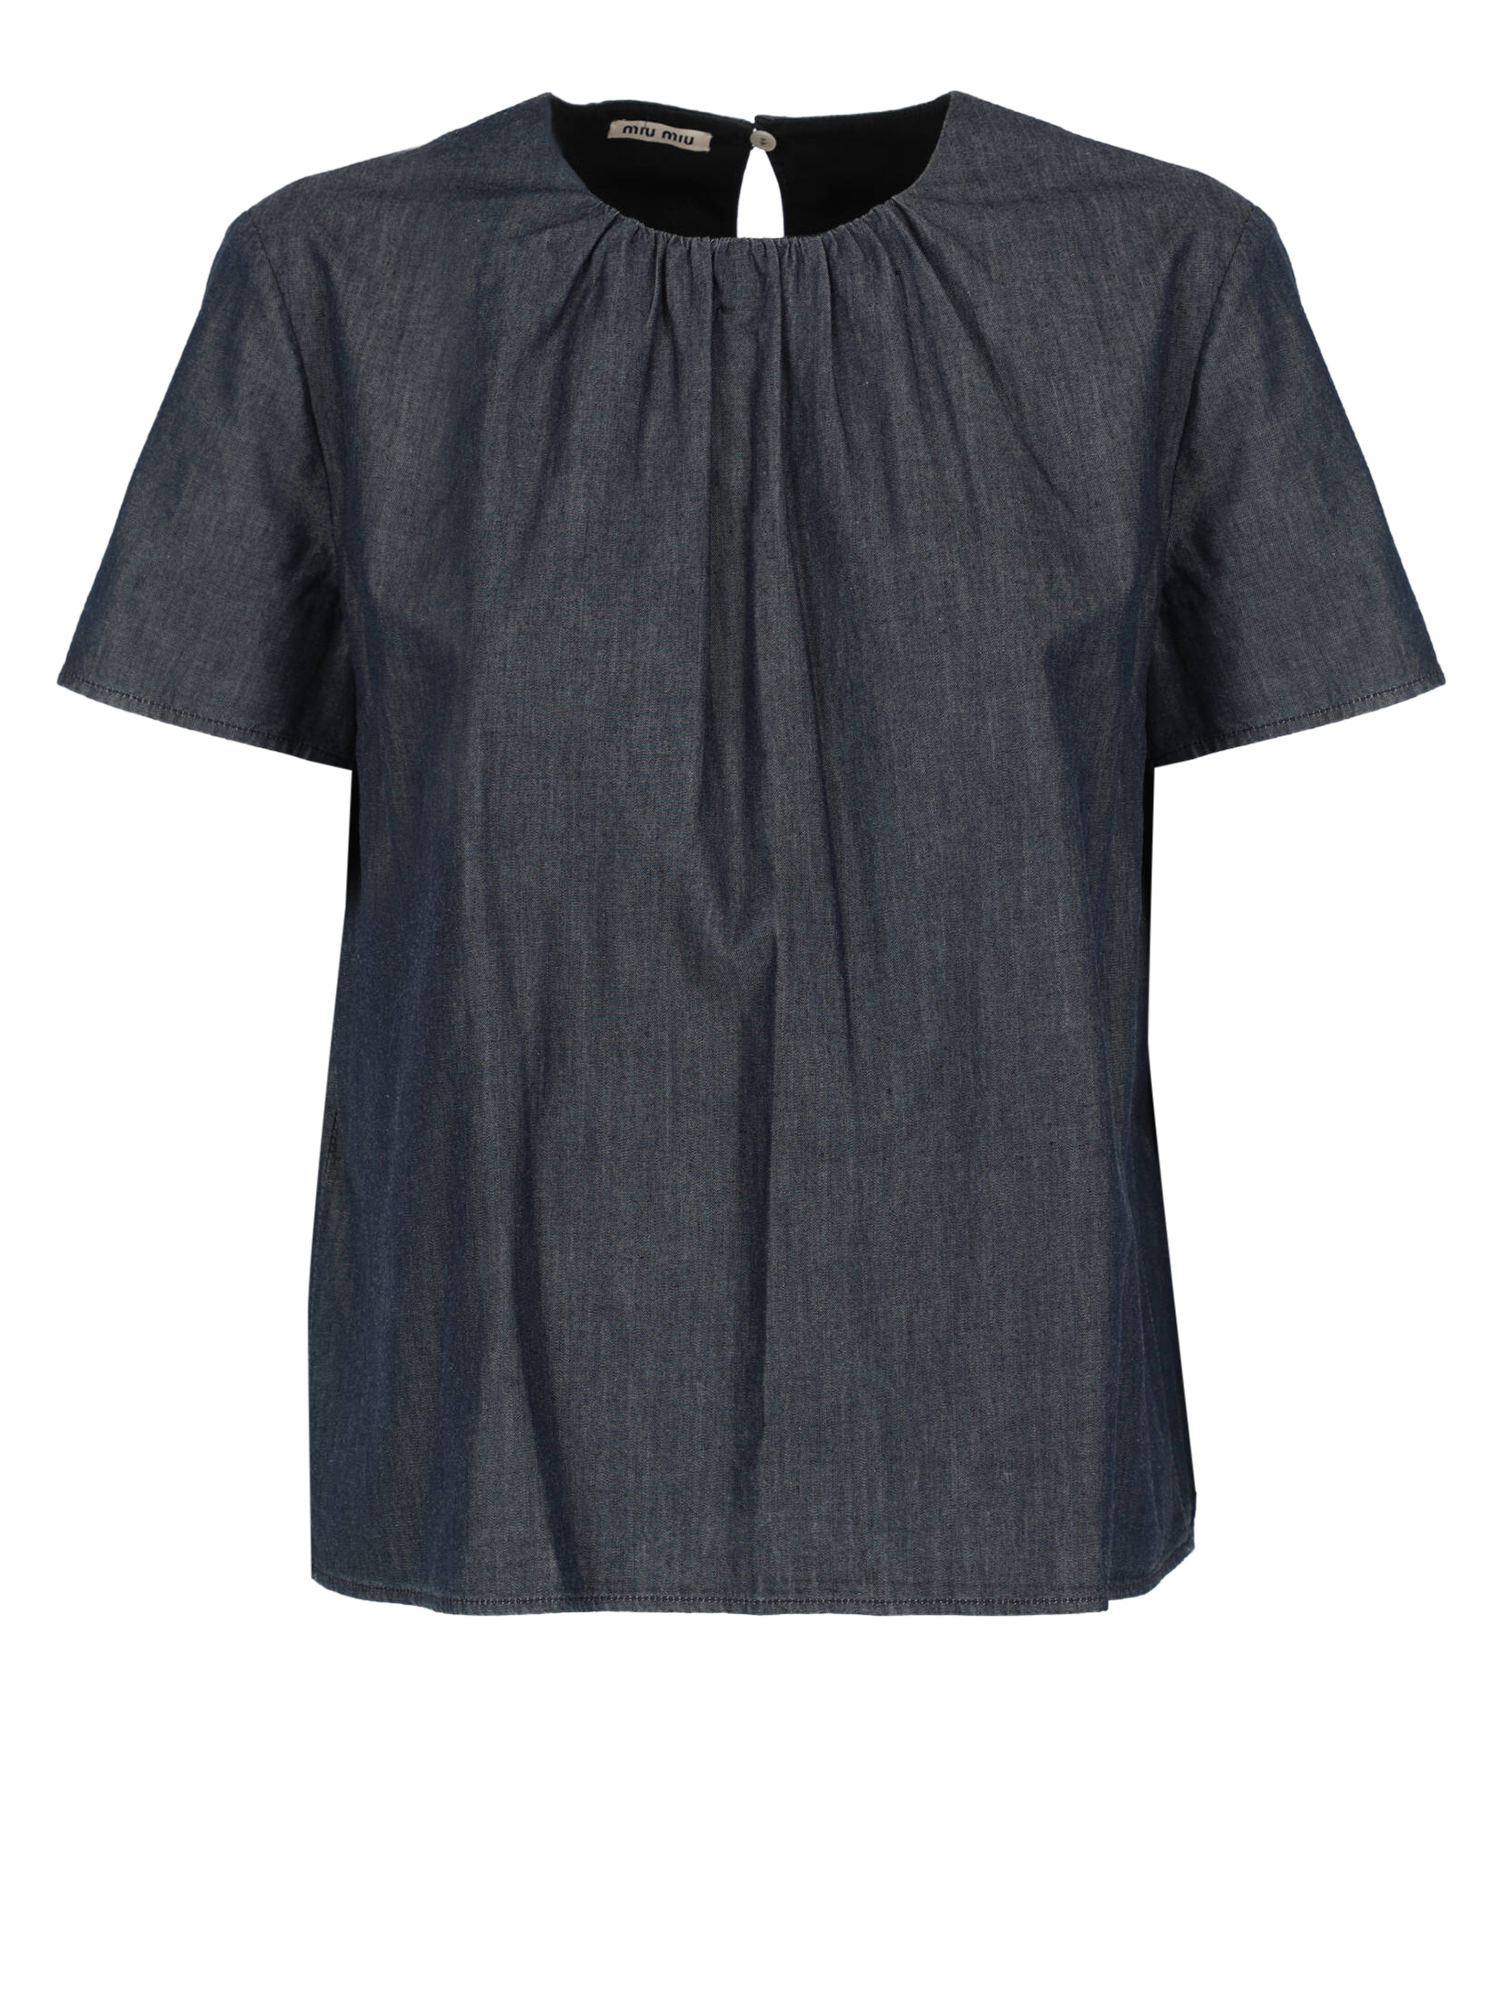 T-shirts Et Tops Pour Femme - Miu Miu - En Cotton Navy - Taille:  -